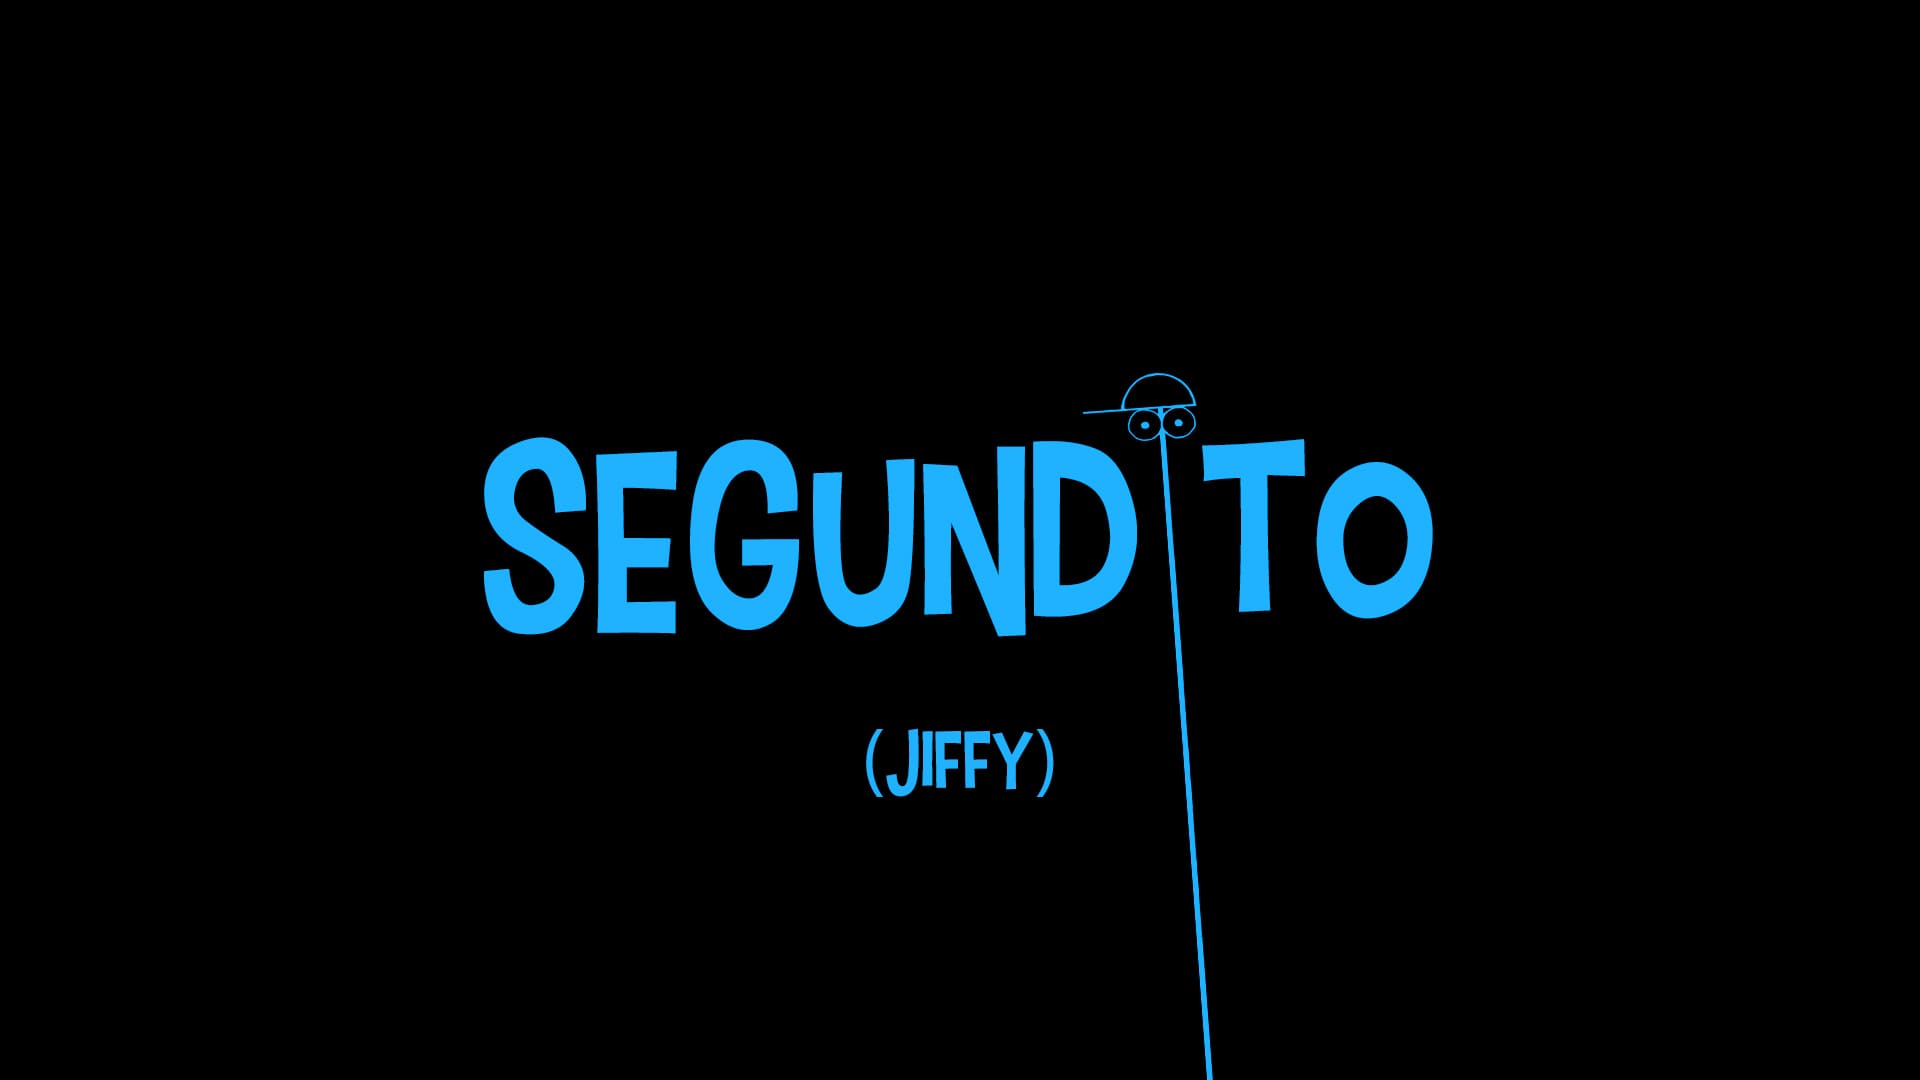 SEGUNDITO / JIFFY